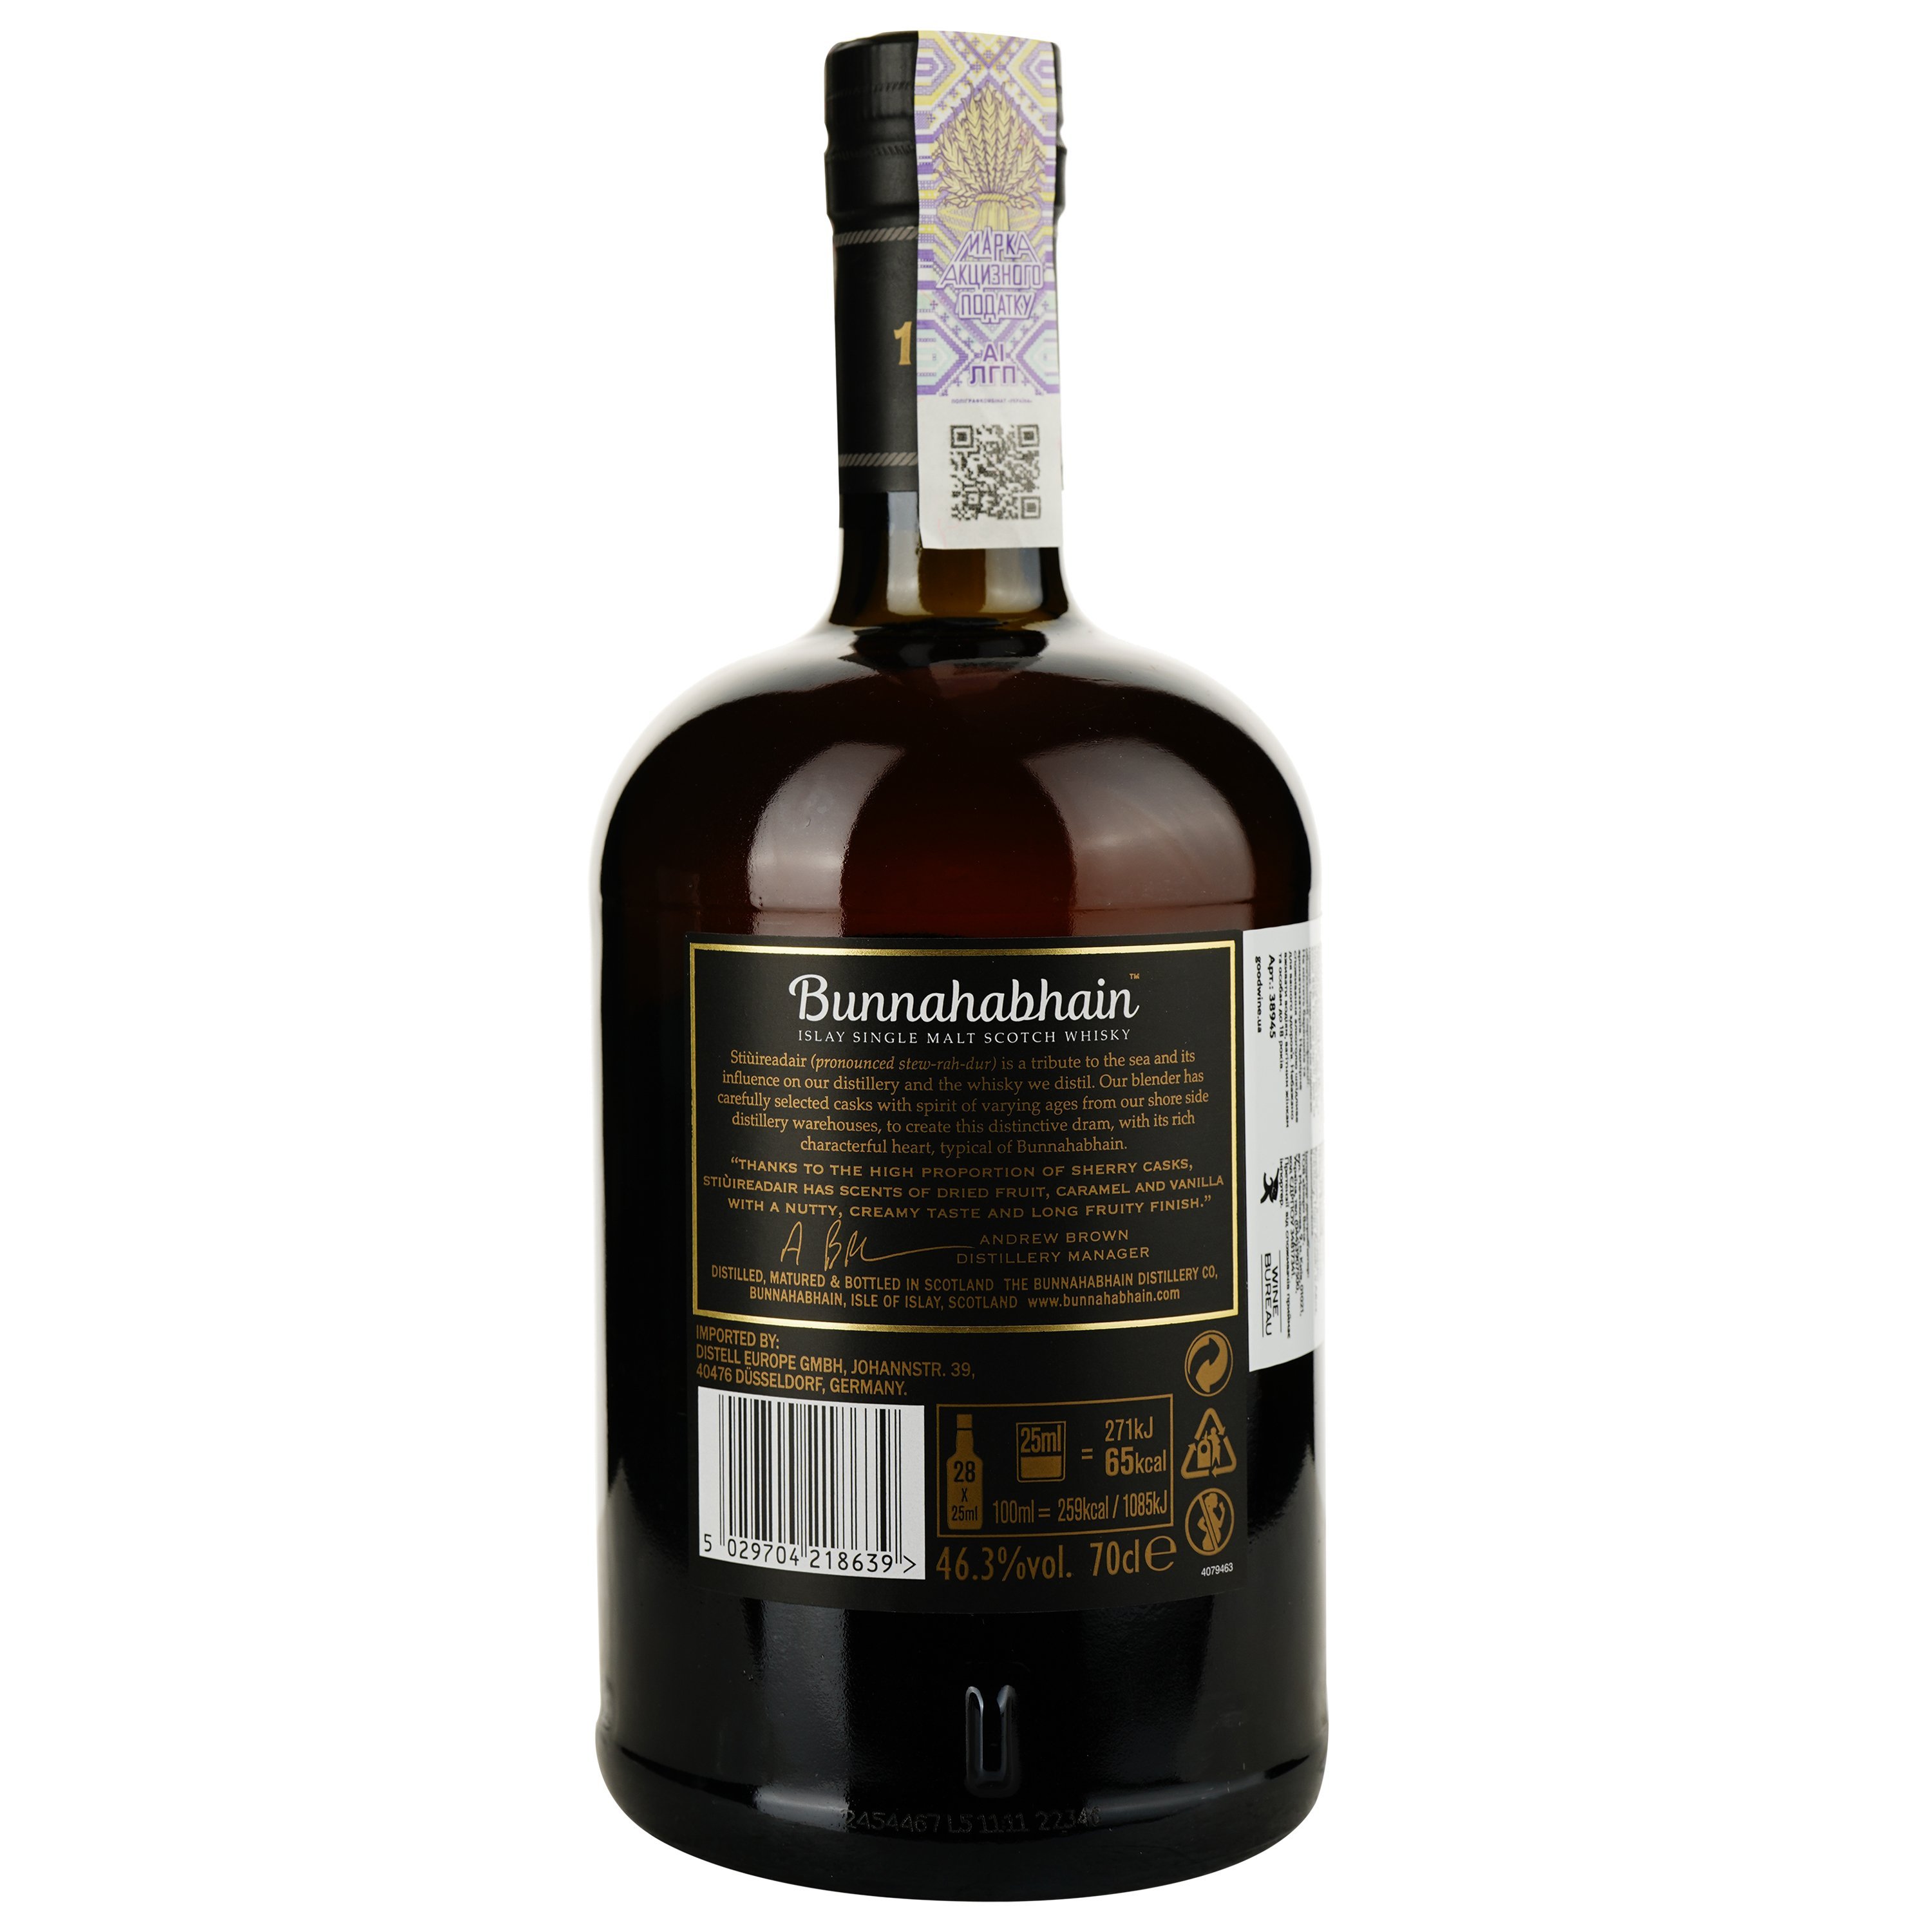 Віскі Bunnahabhain Stiuireadair Single Malt Scotch Whisky 46.3% 0.7 л, в подарунковій упаковці - фото 3